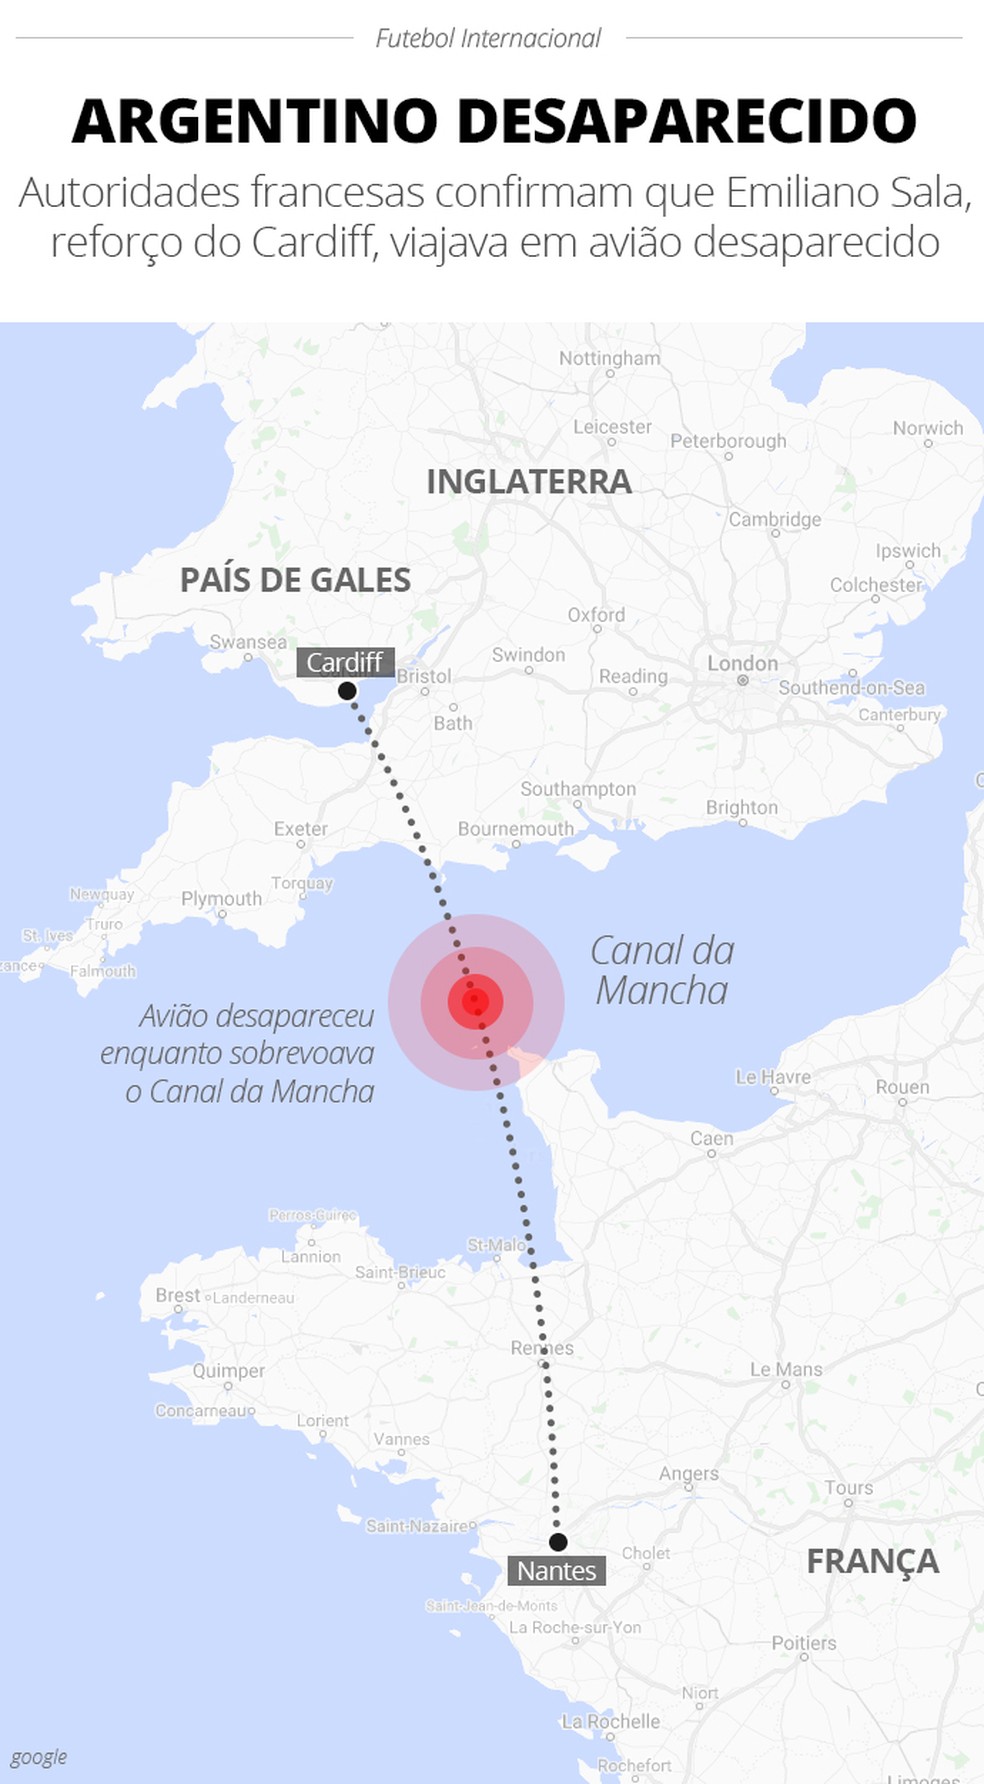 ÁUDIO: em conversa com amigo, Emiliano Sala relata medo dentro de avião